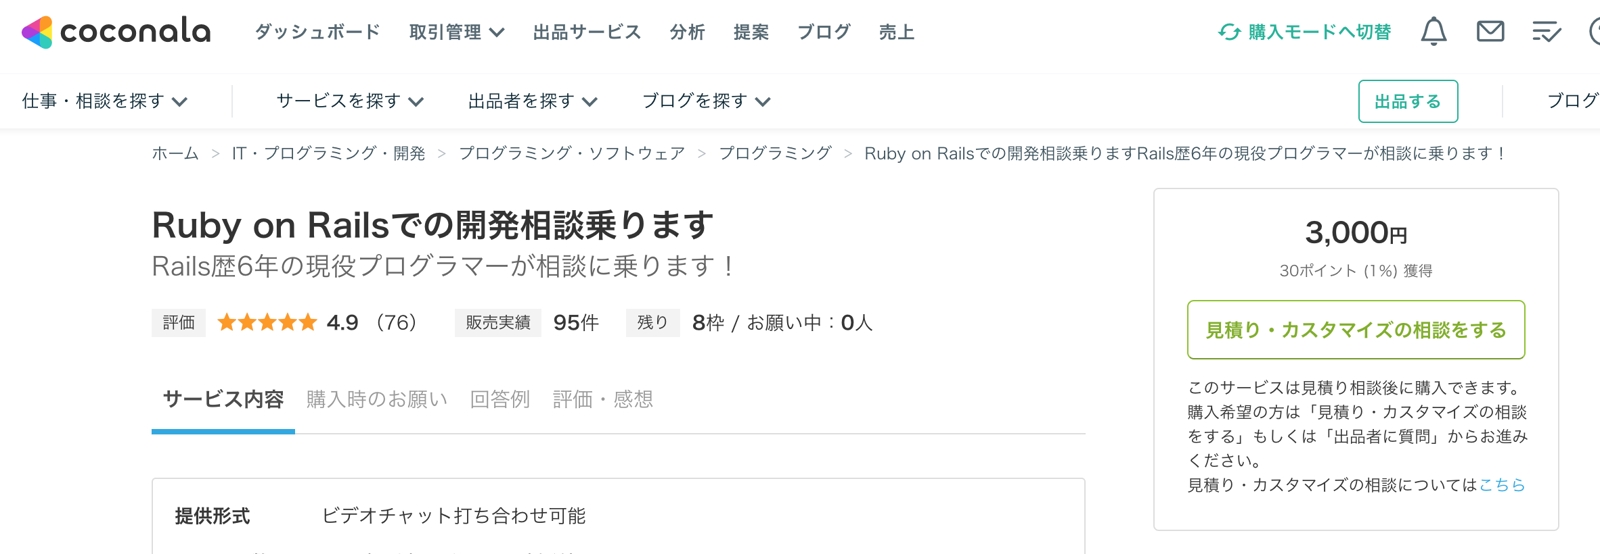 Ruby on Railsの困りごと相談受け付けます-image2